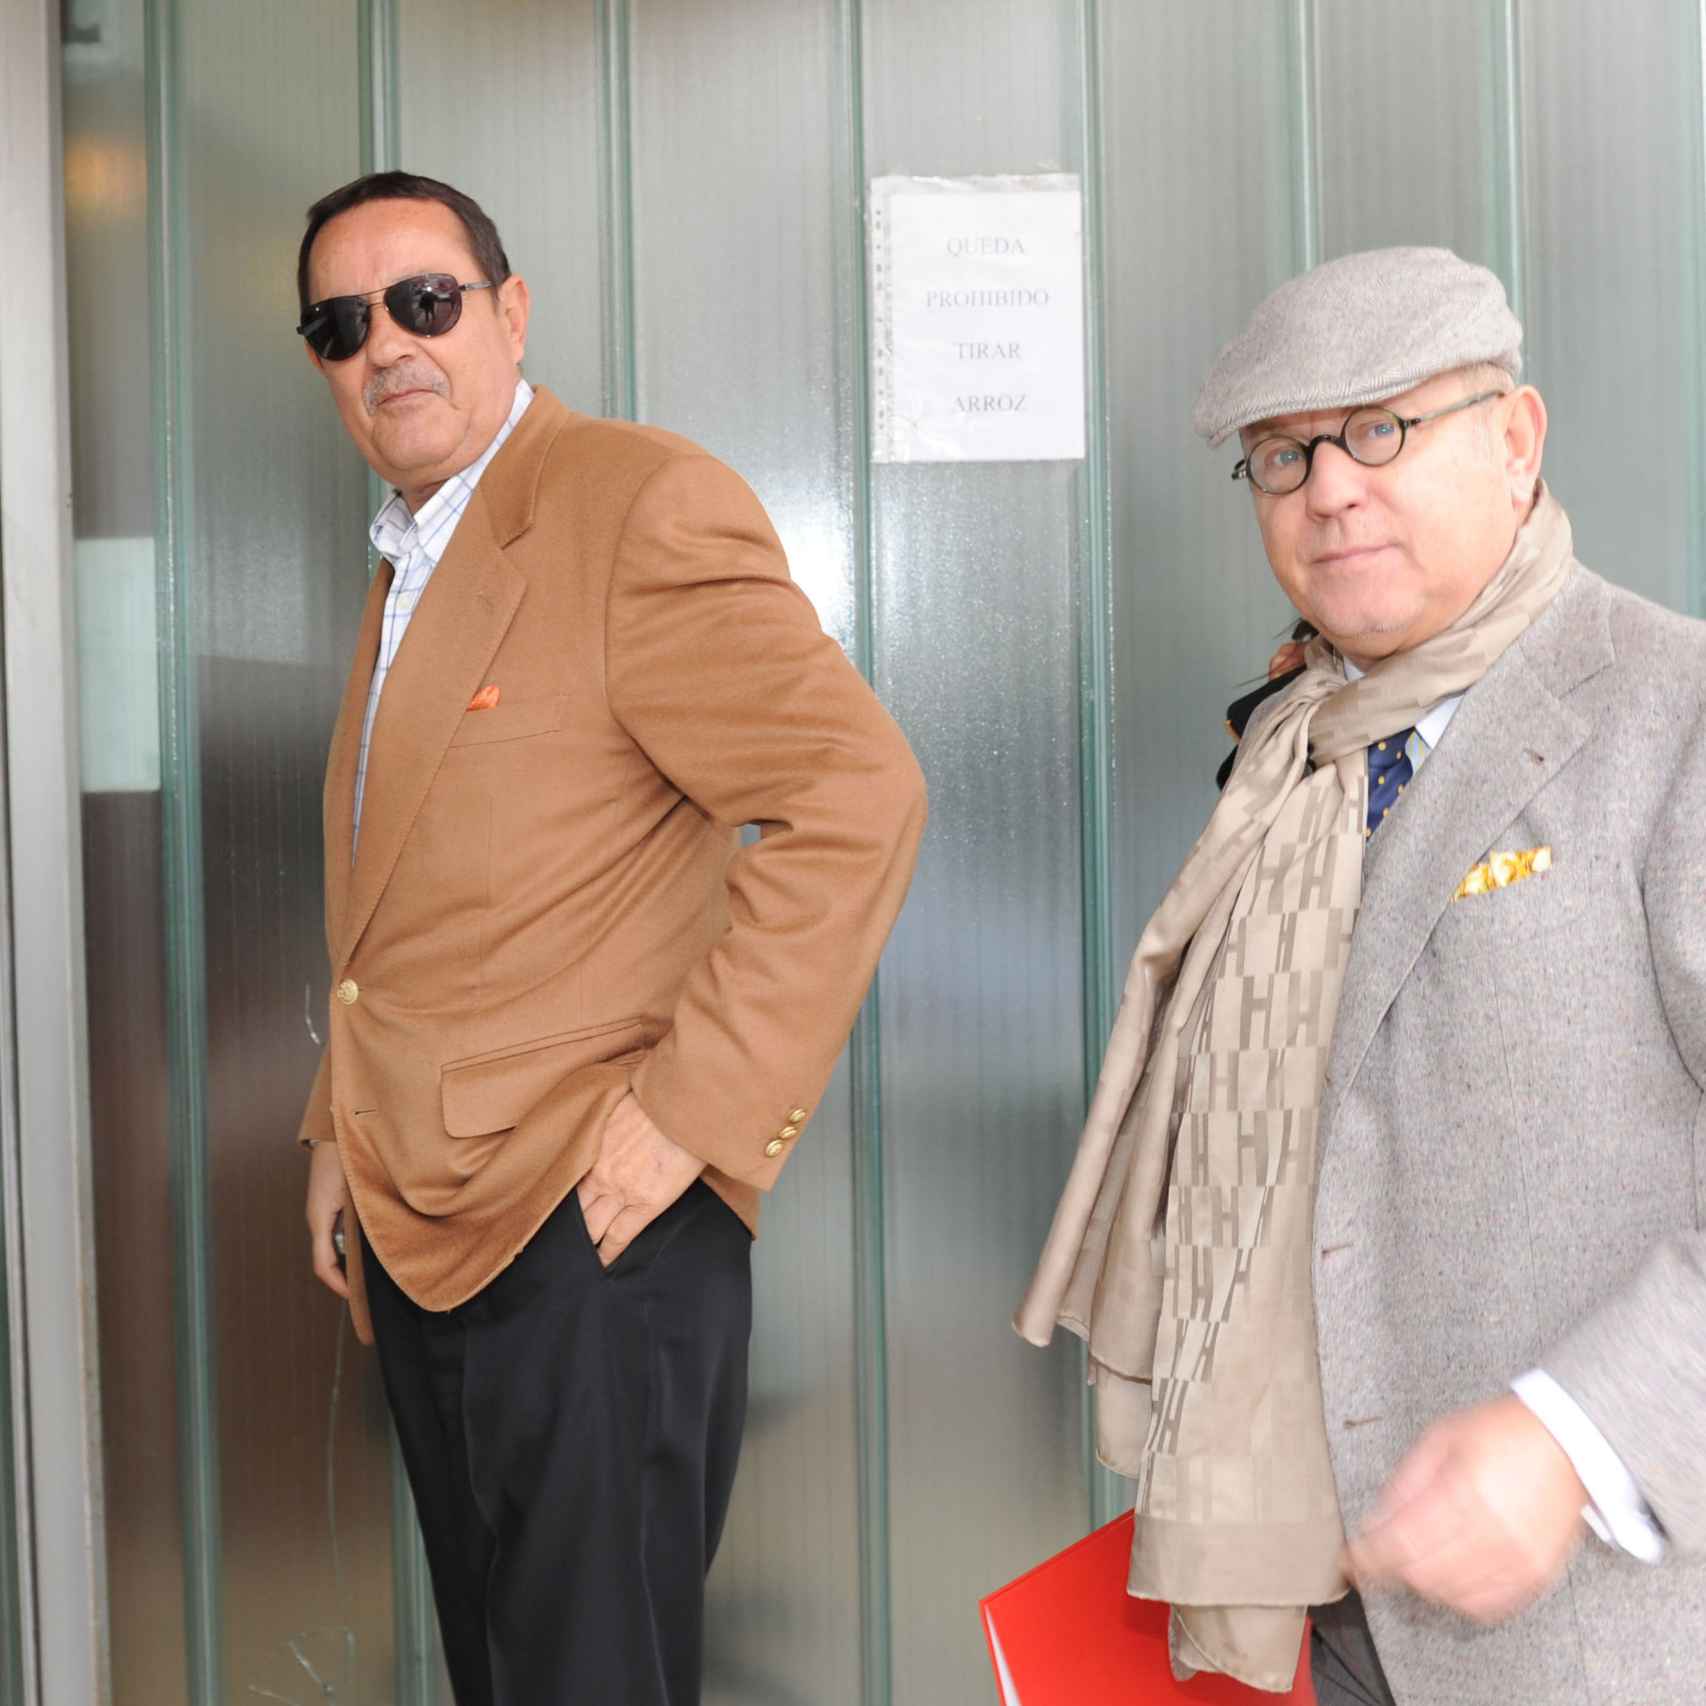 Muñoz y Saavedra en 2012 entrando al juzgado. El deterioro físico del ex alcalde es notable